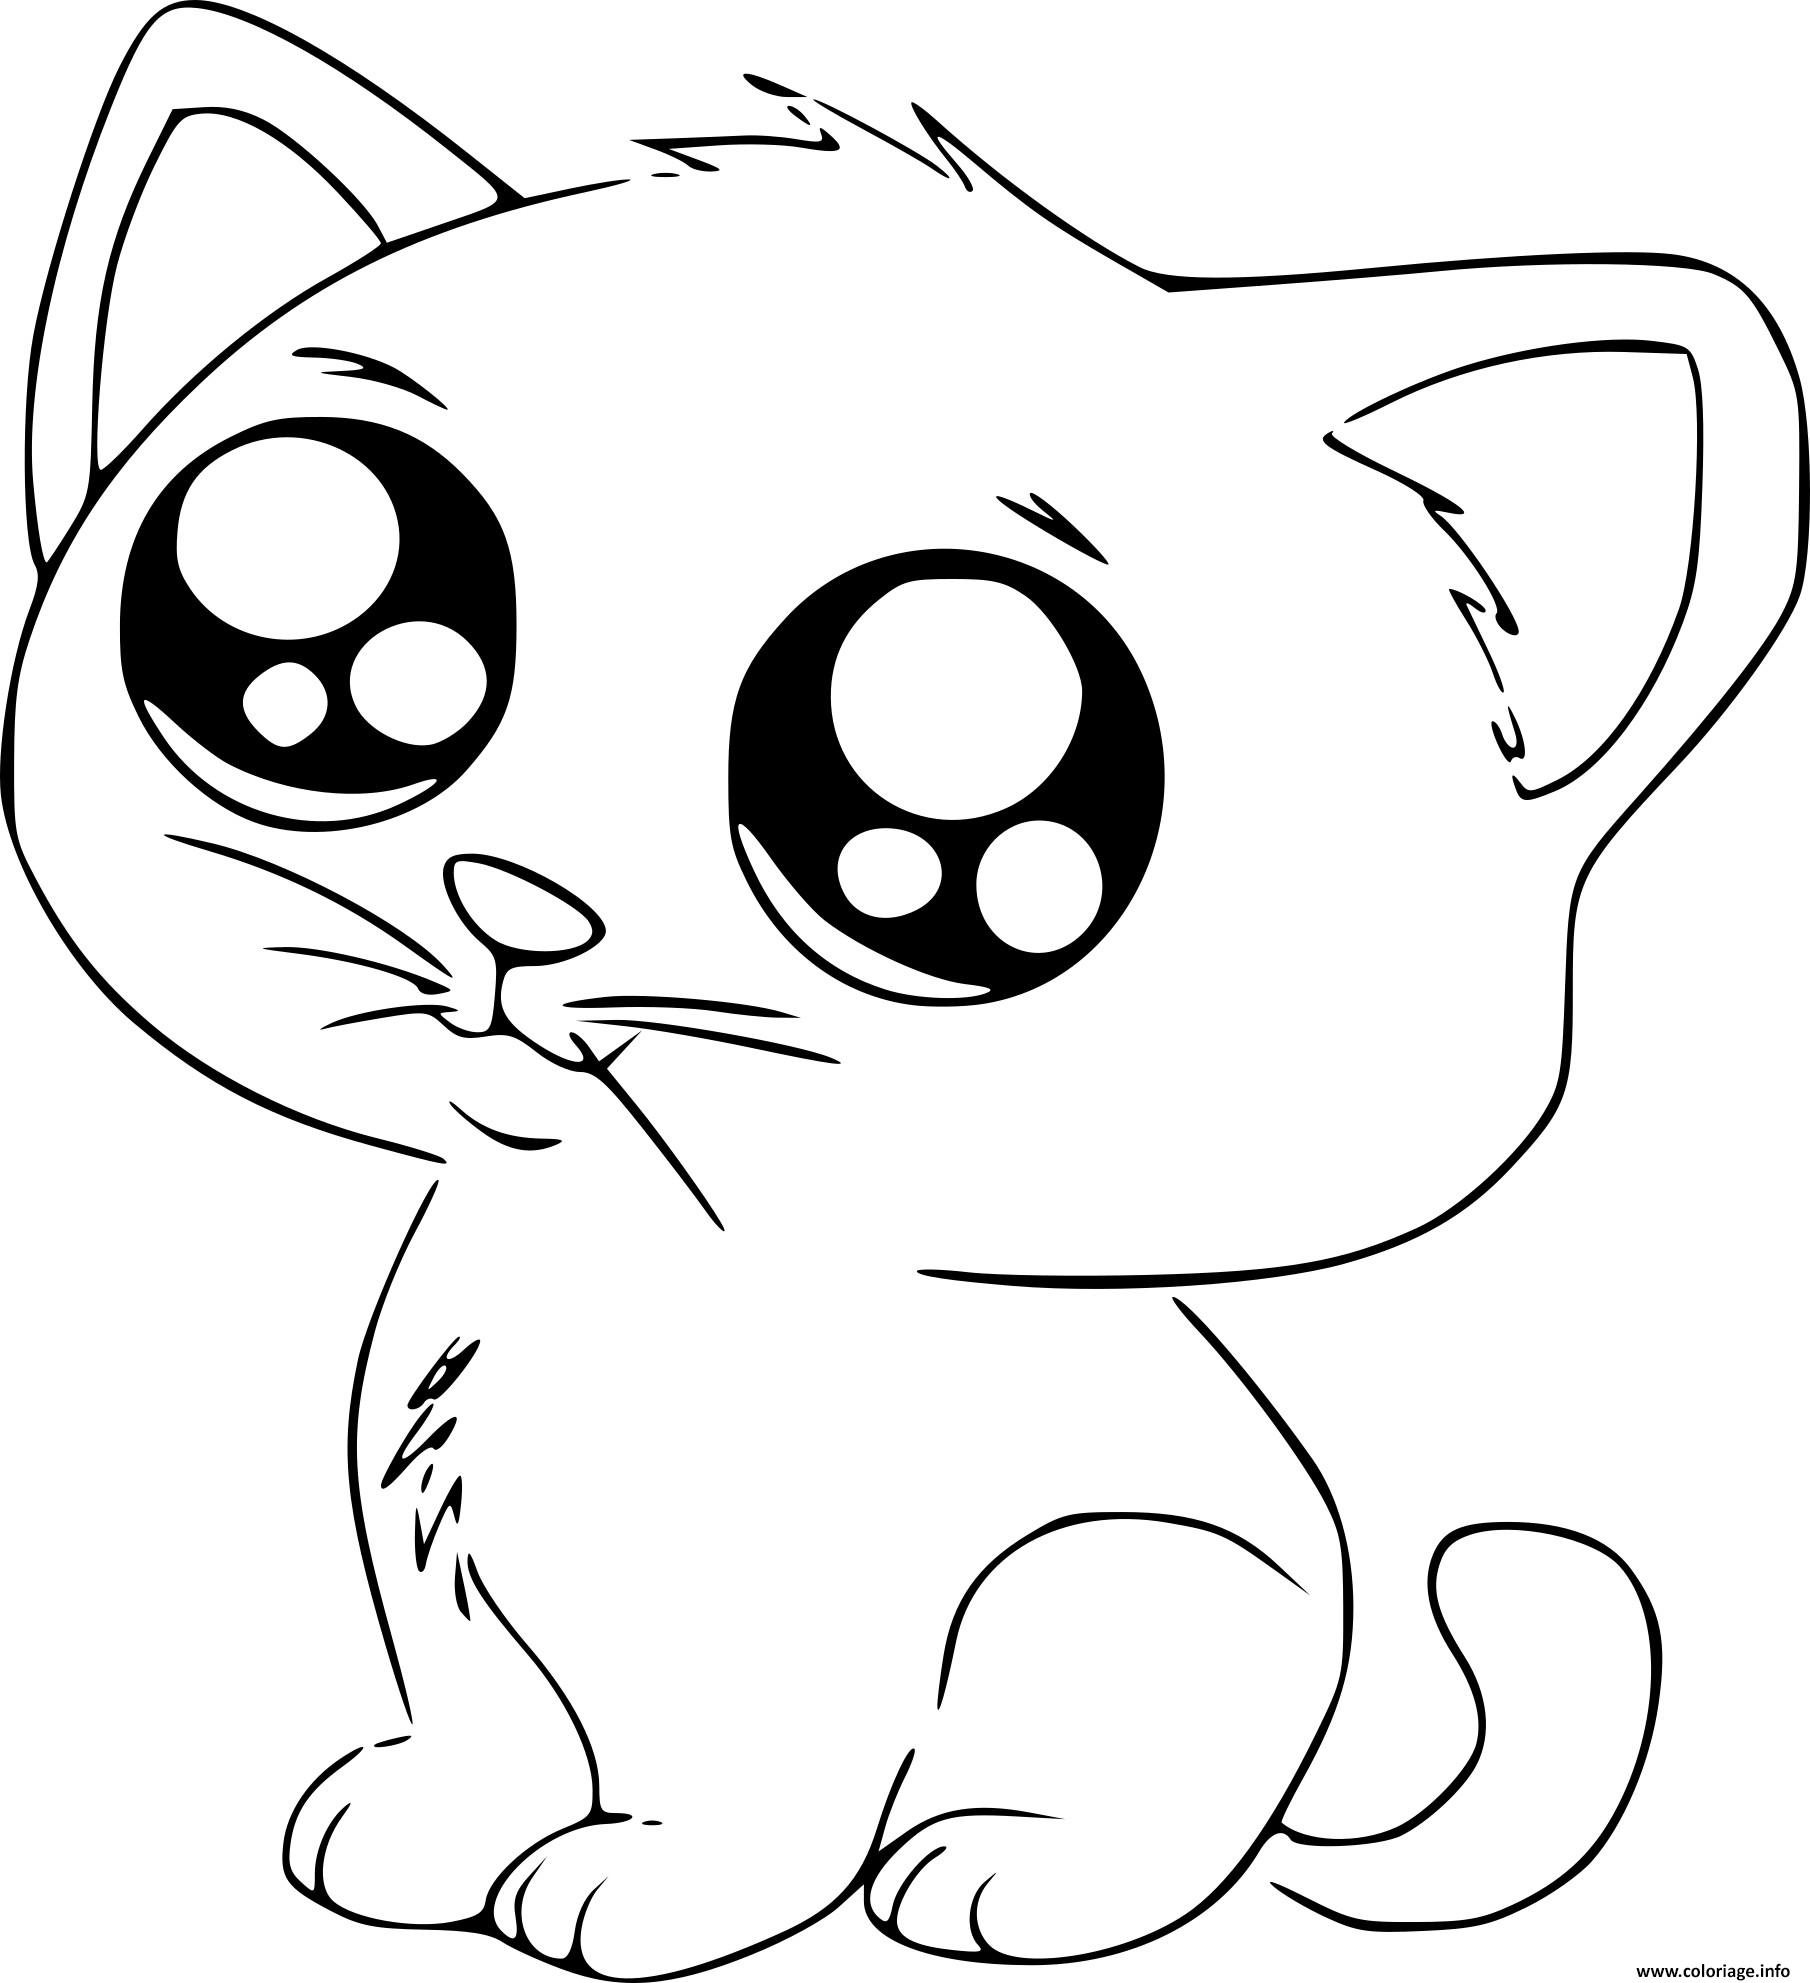 Dessin dessin chat kawaii cute Coloriage Gratuit à Imprimer